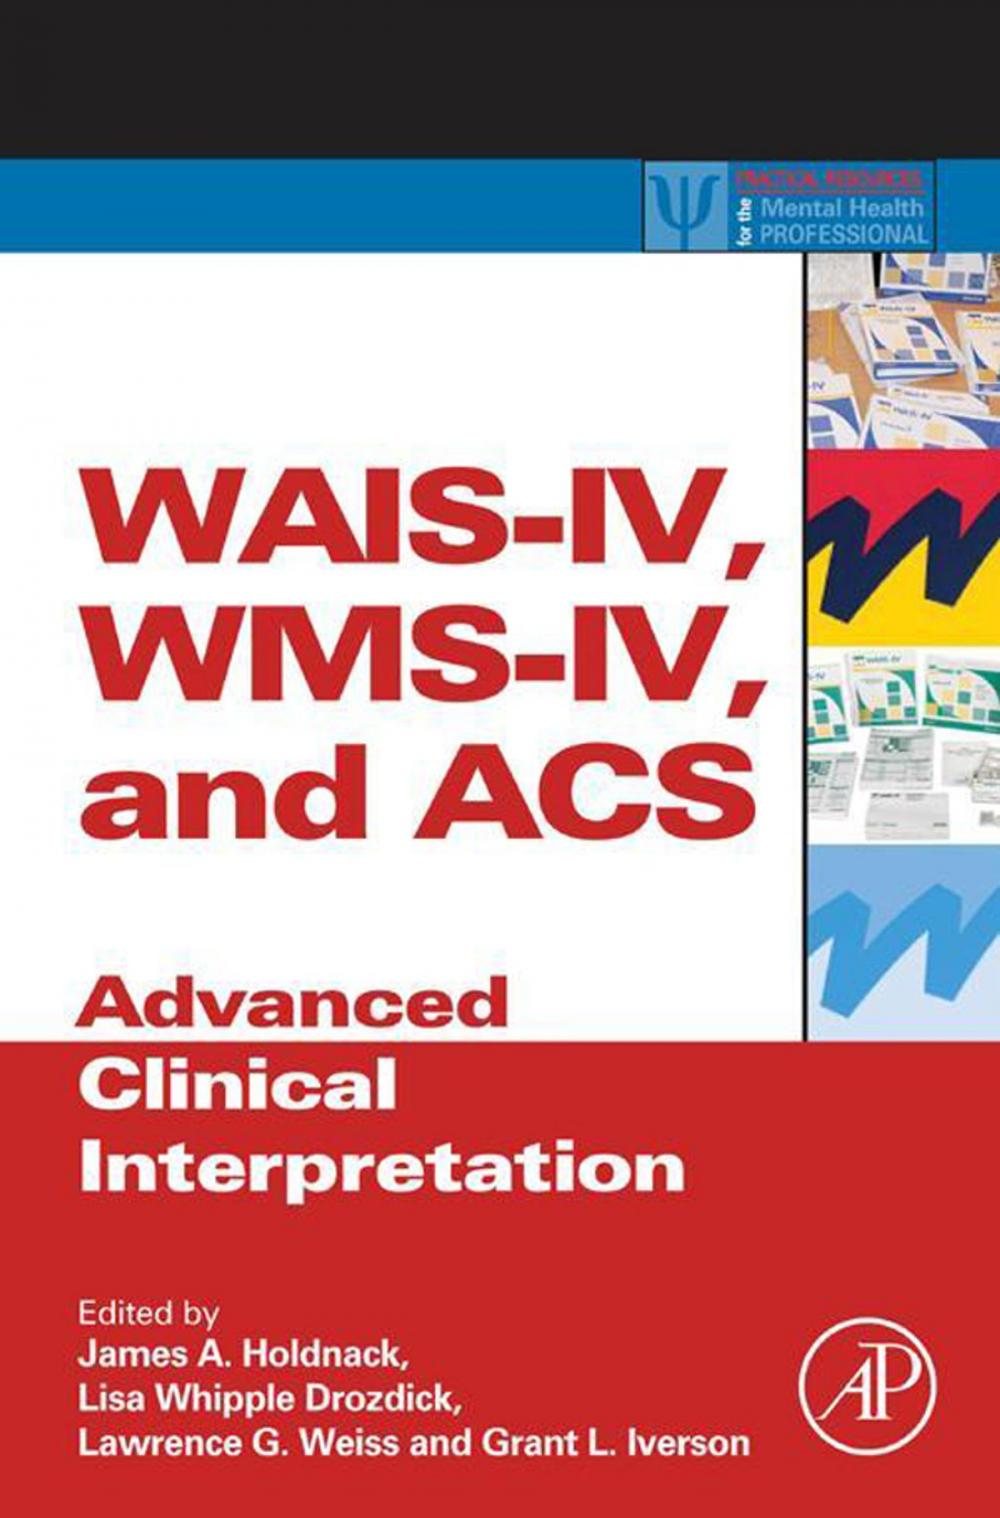 Big bigCover of WAIS-IV, WMS-IV, and ACS